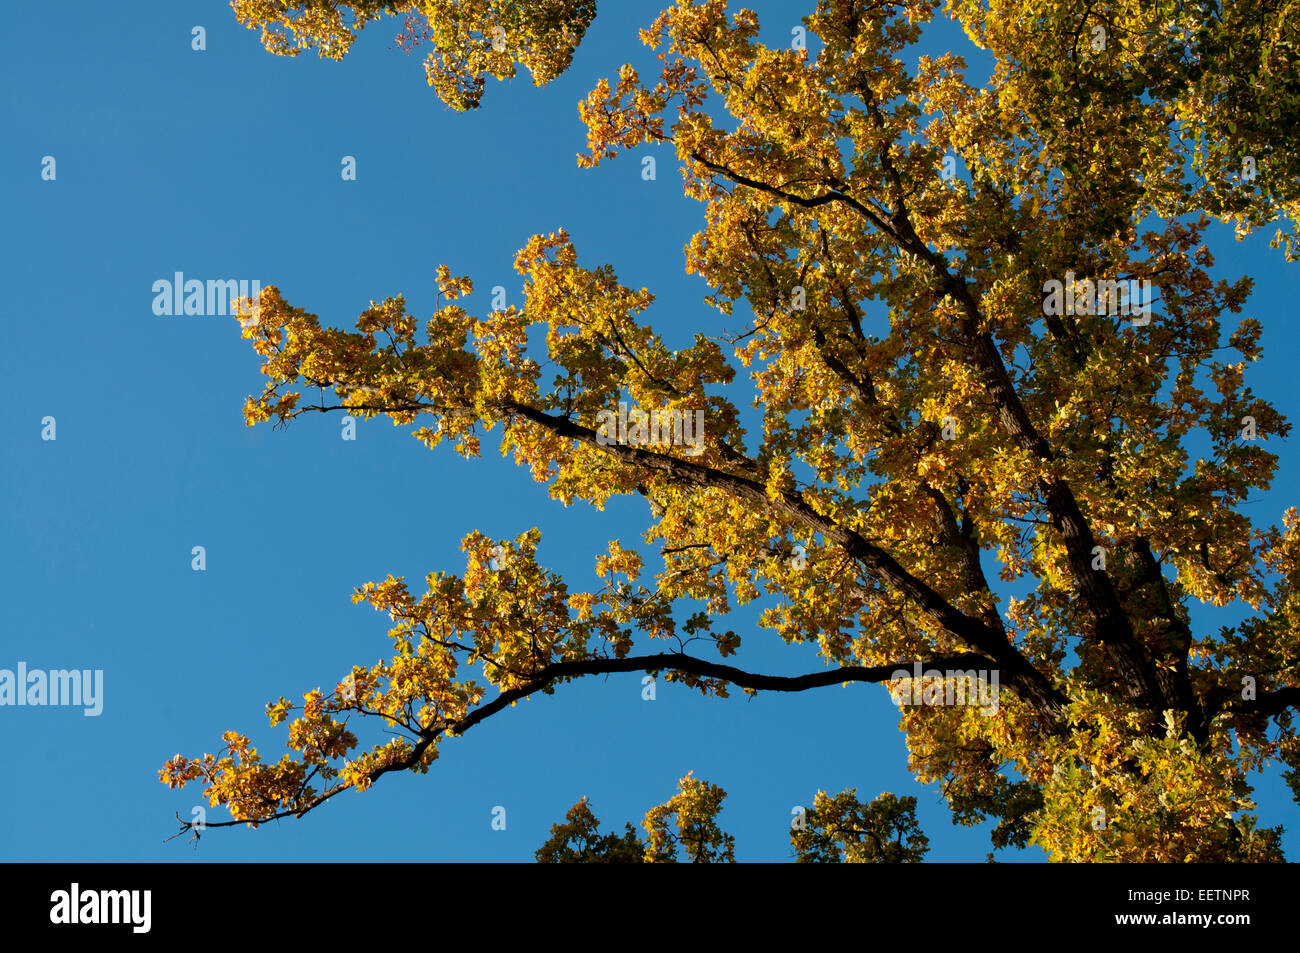 French Oak est un large arbre natif de congé en Europe et de plus en plus ici dans un parc autour de Kroechlendorff château en Allemagne. Banque D'Images